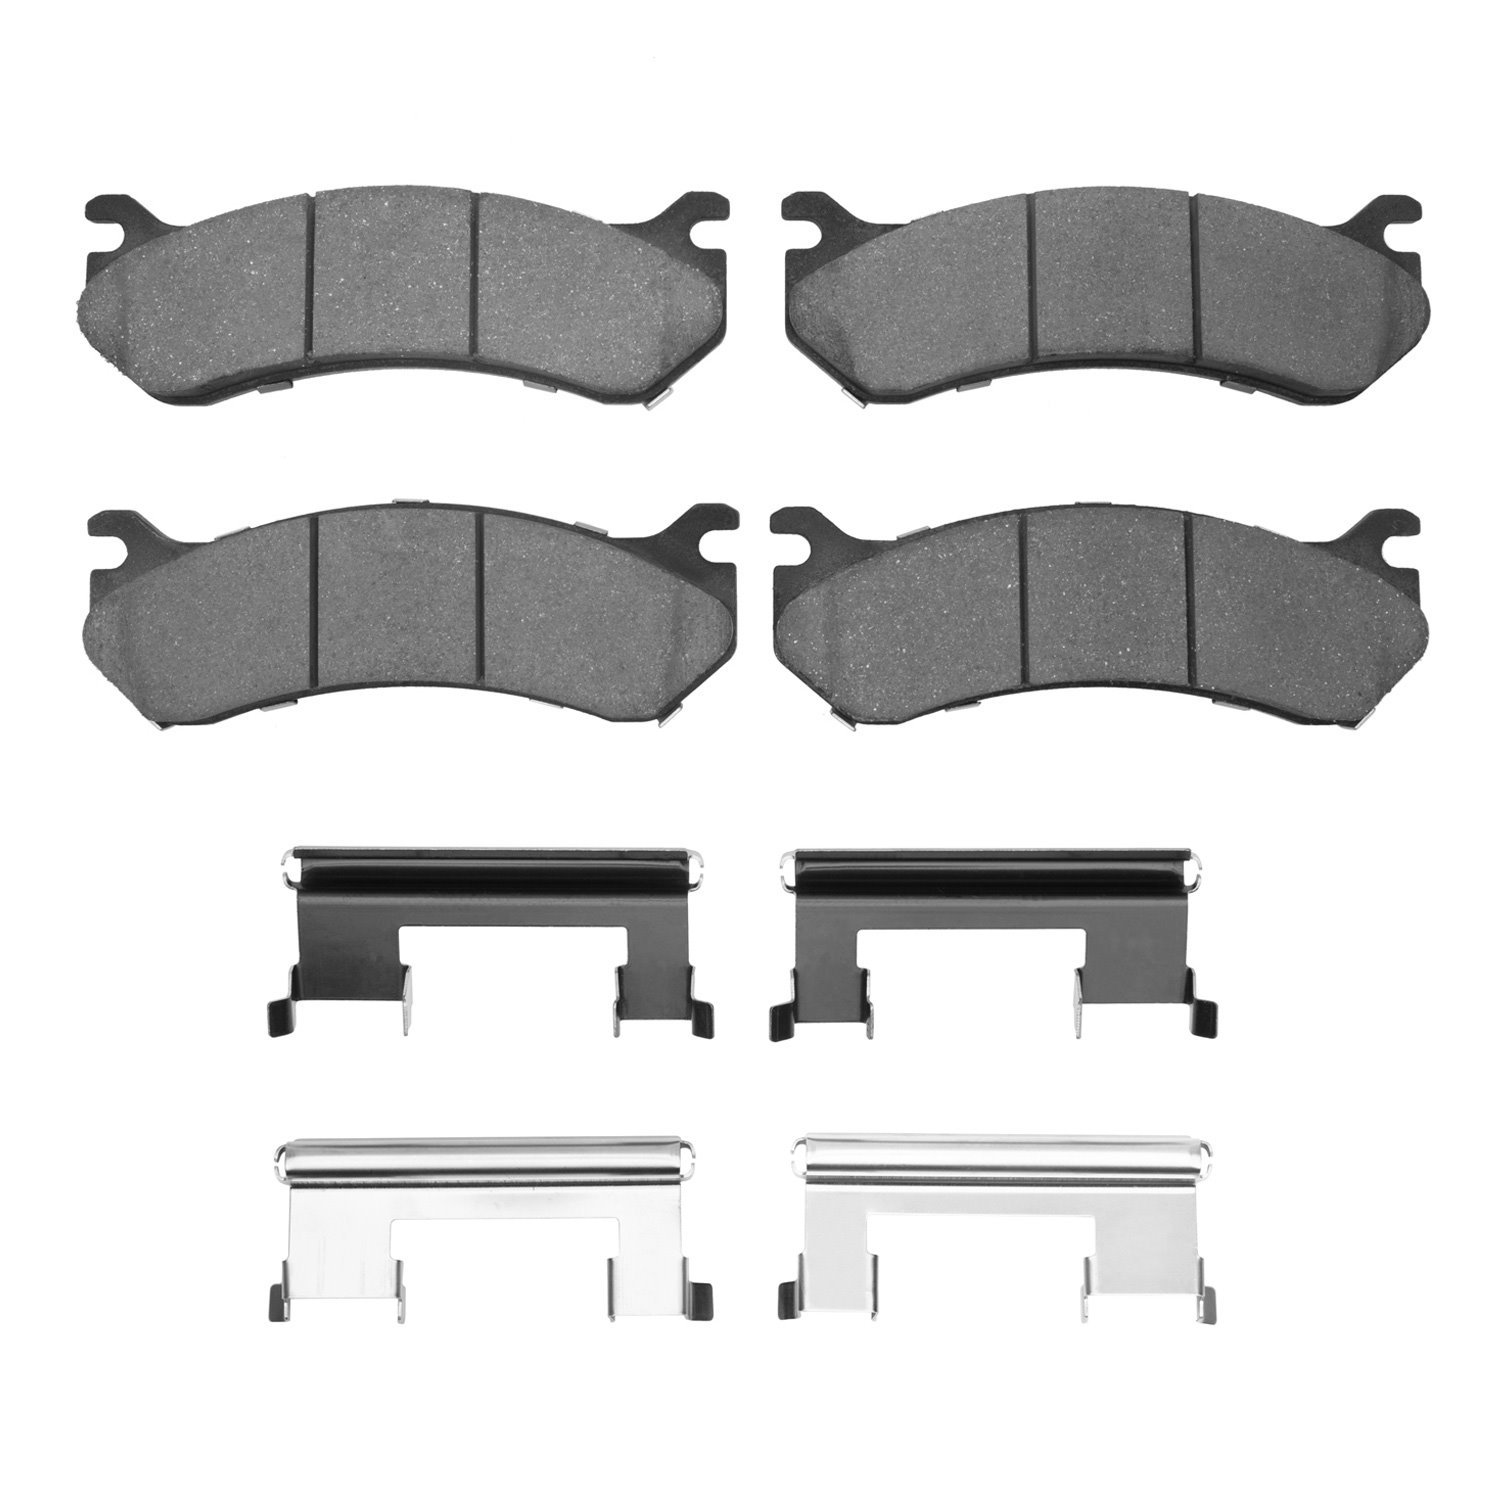 Semi-Metallic Brake Pads & Hardware Kit, 1999-2013 GM, Position: Front & Rear